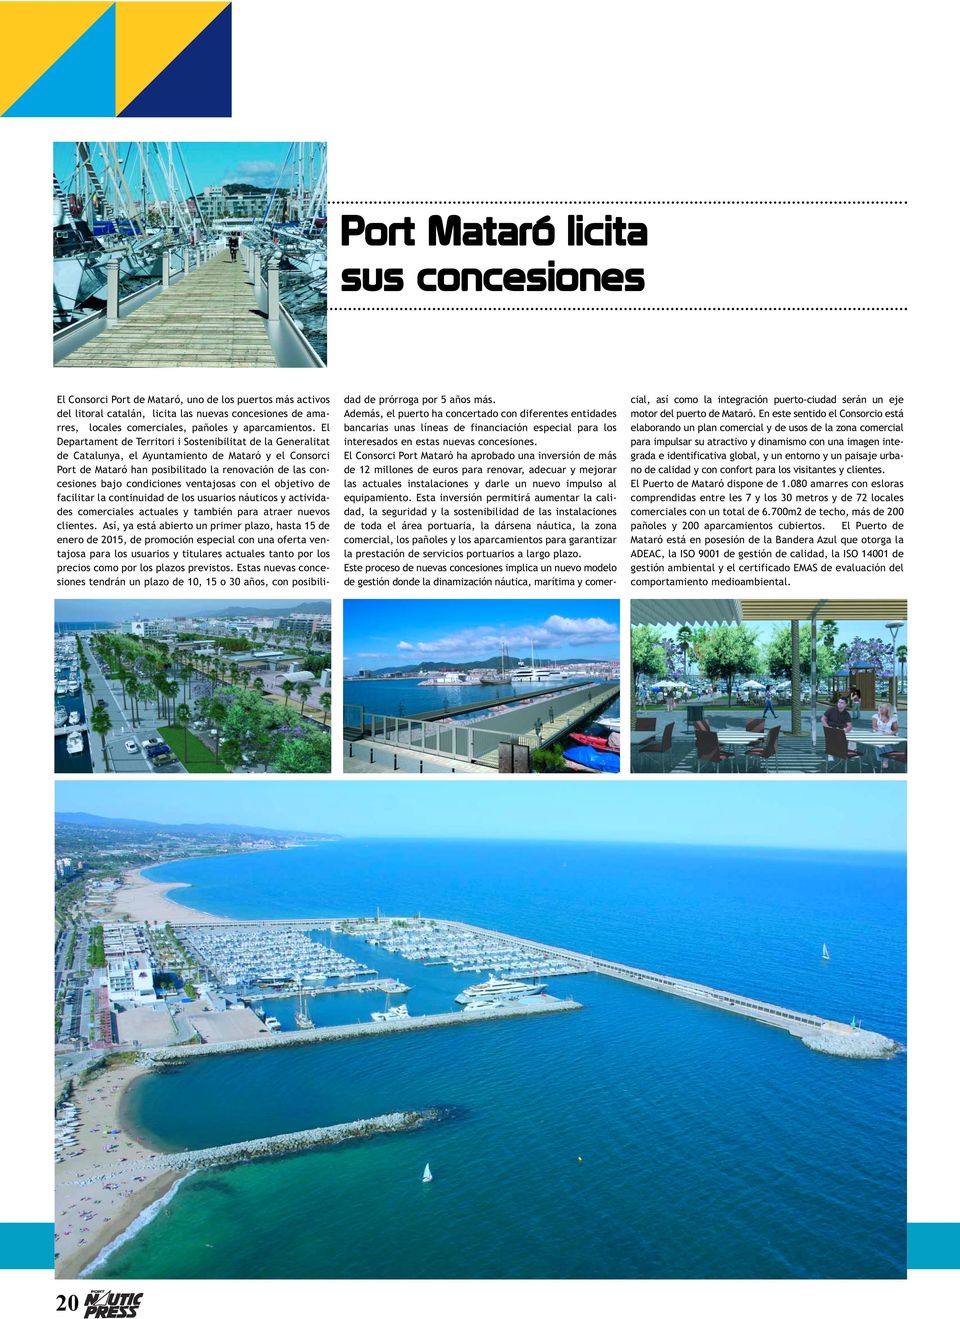 El Departament de Territori i Sostenibilitat de la Generalitat de Catalunya, el Ayuntamiento de Mataró y el Consorci Port de Mataró han posibilitado la renovación de las concesiones bajo condiciones